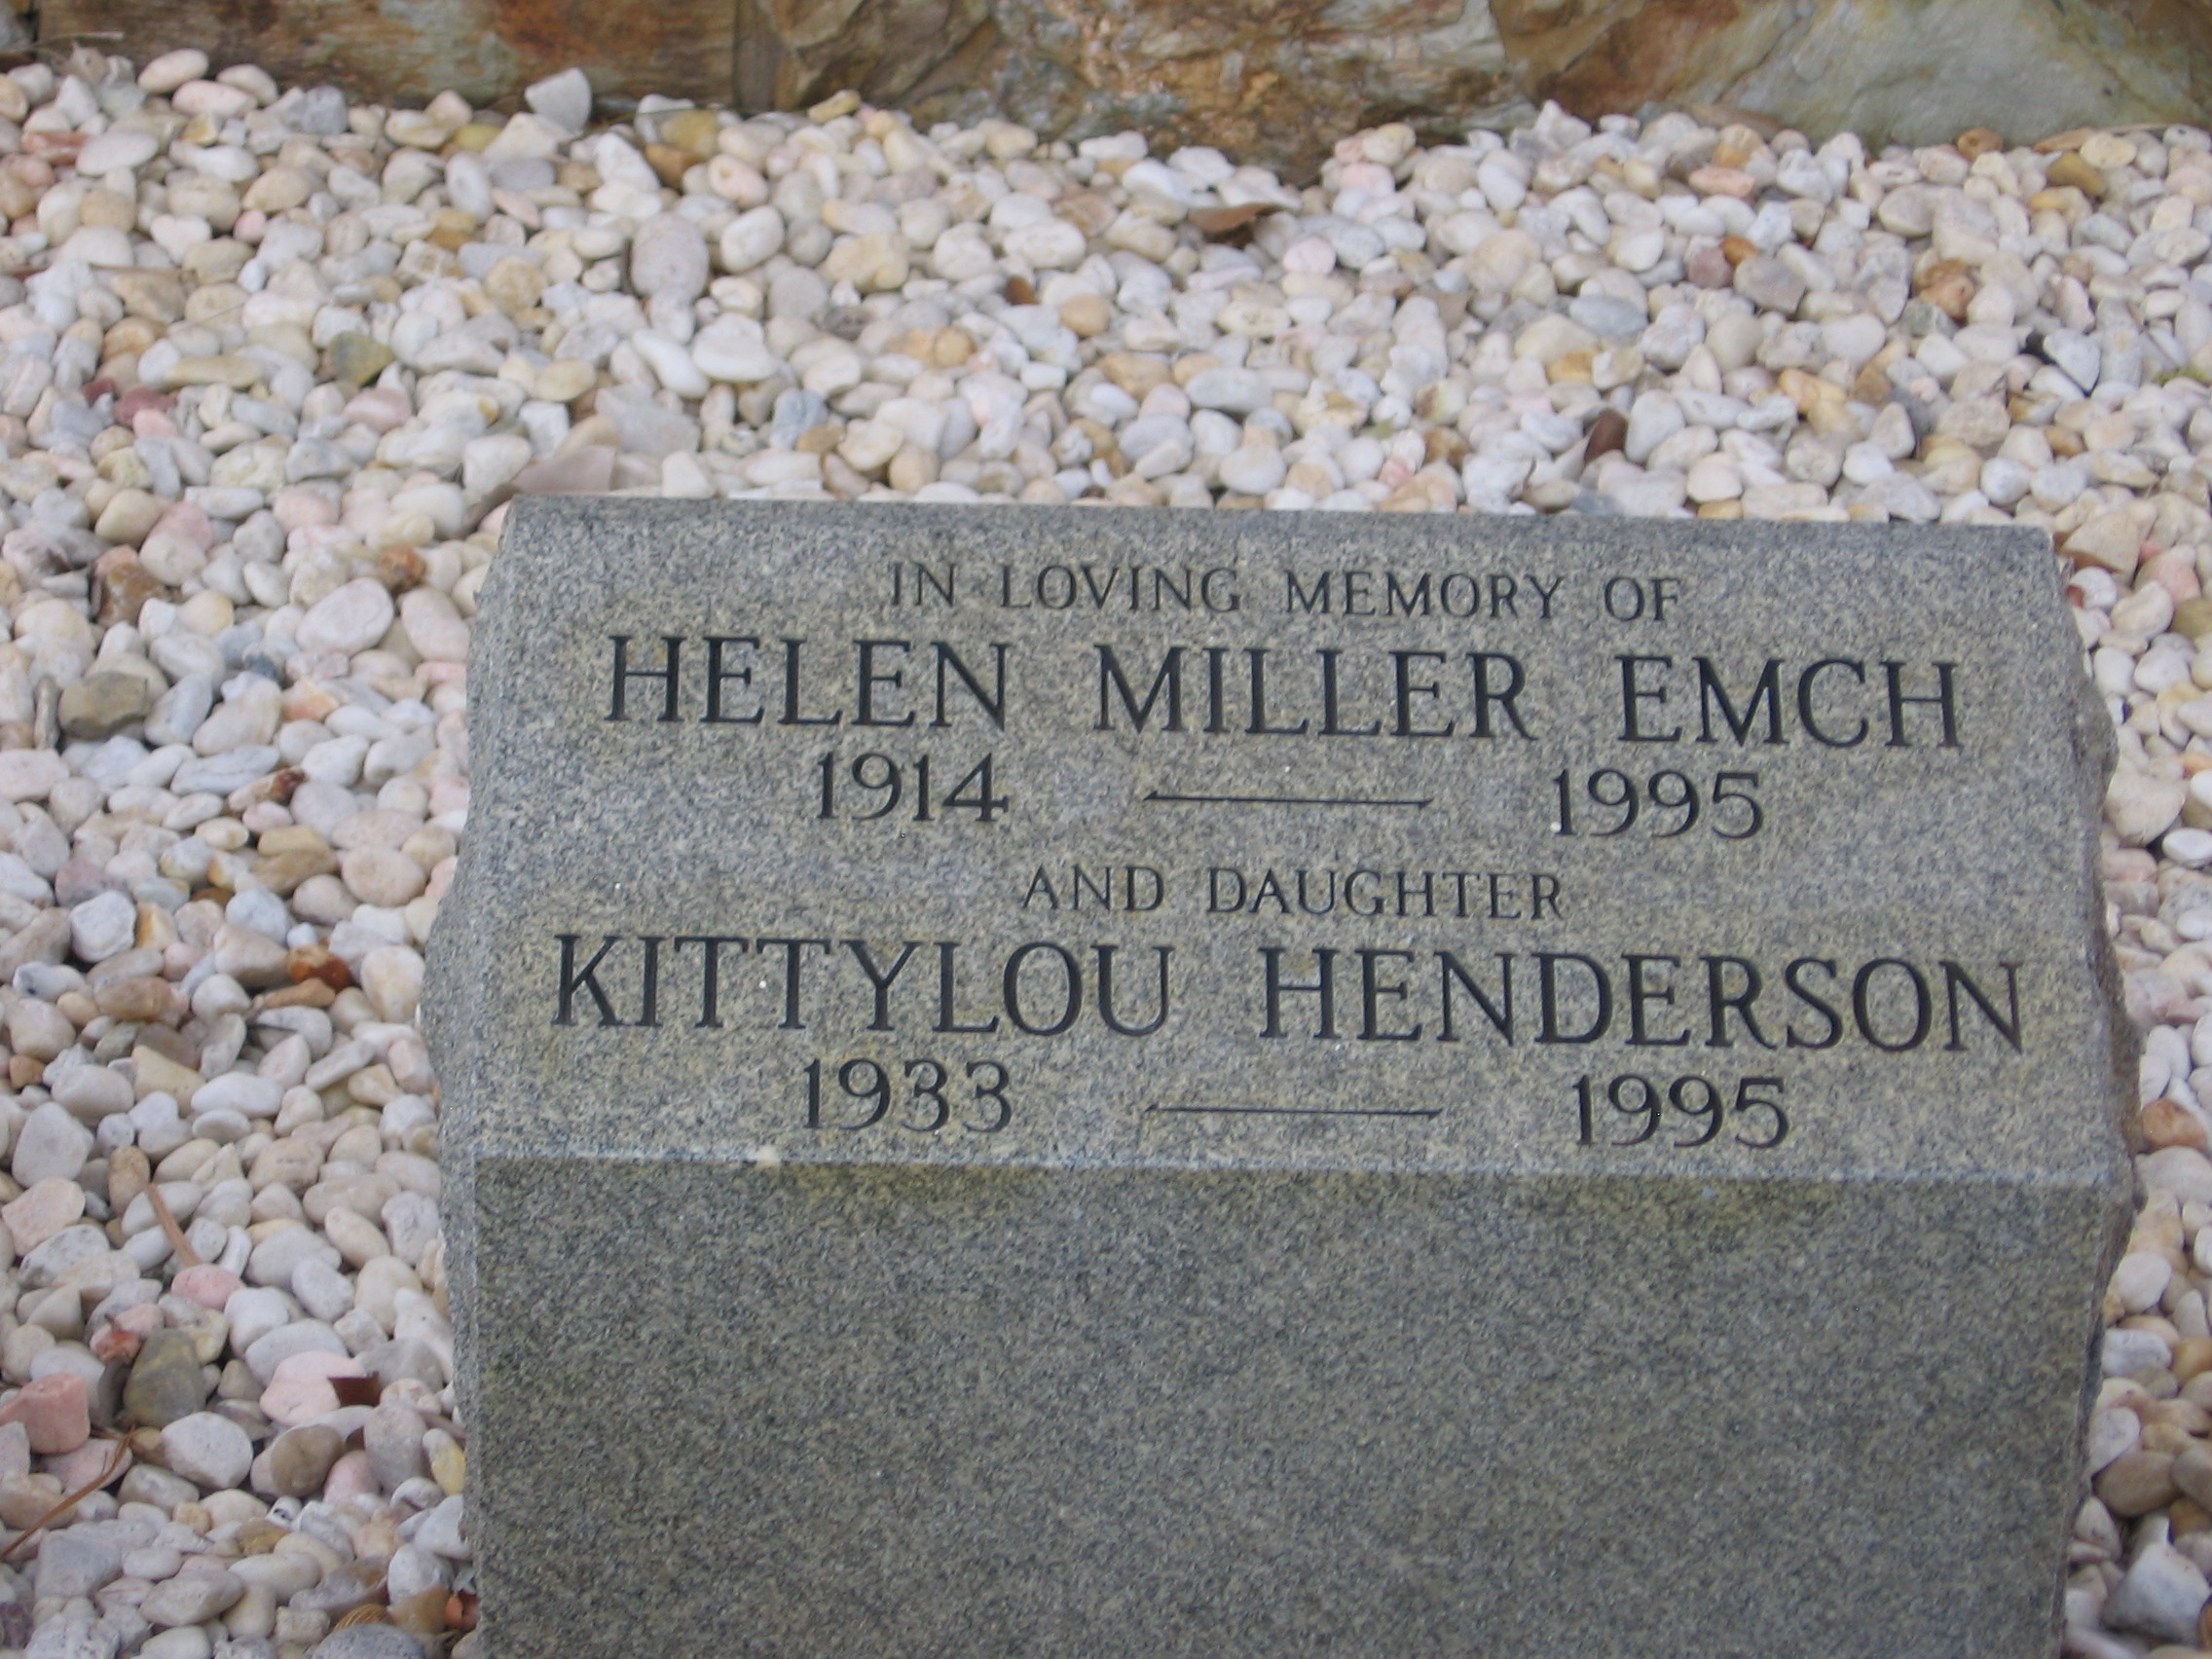 Kittylou Henderson